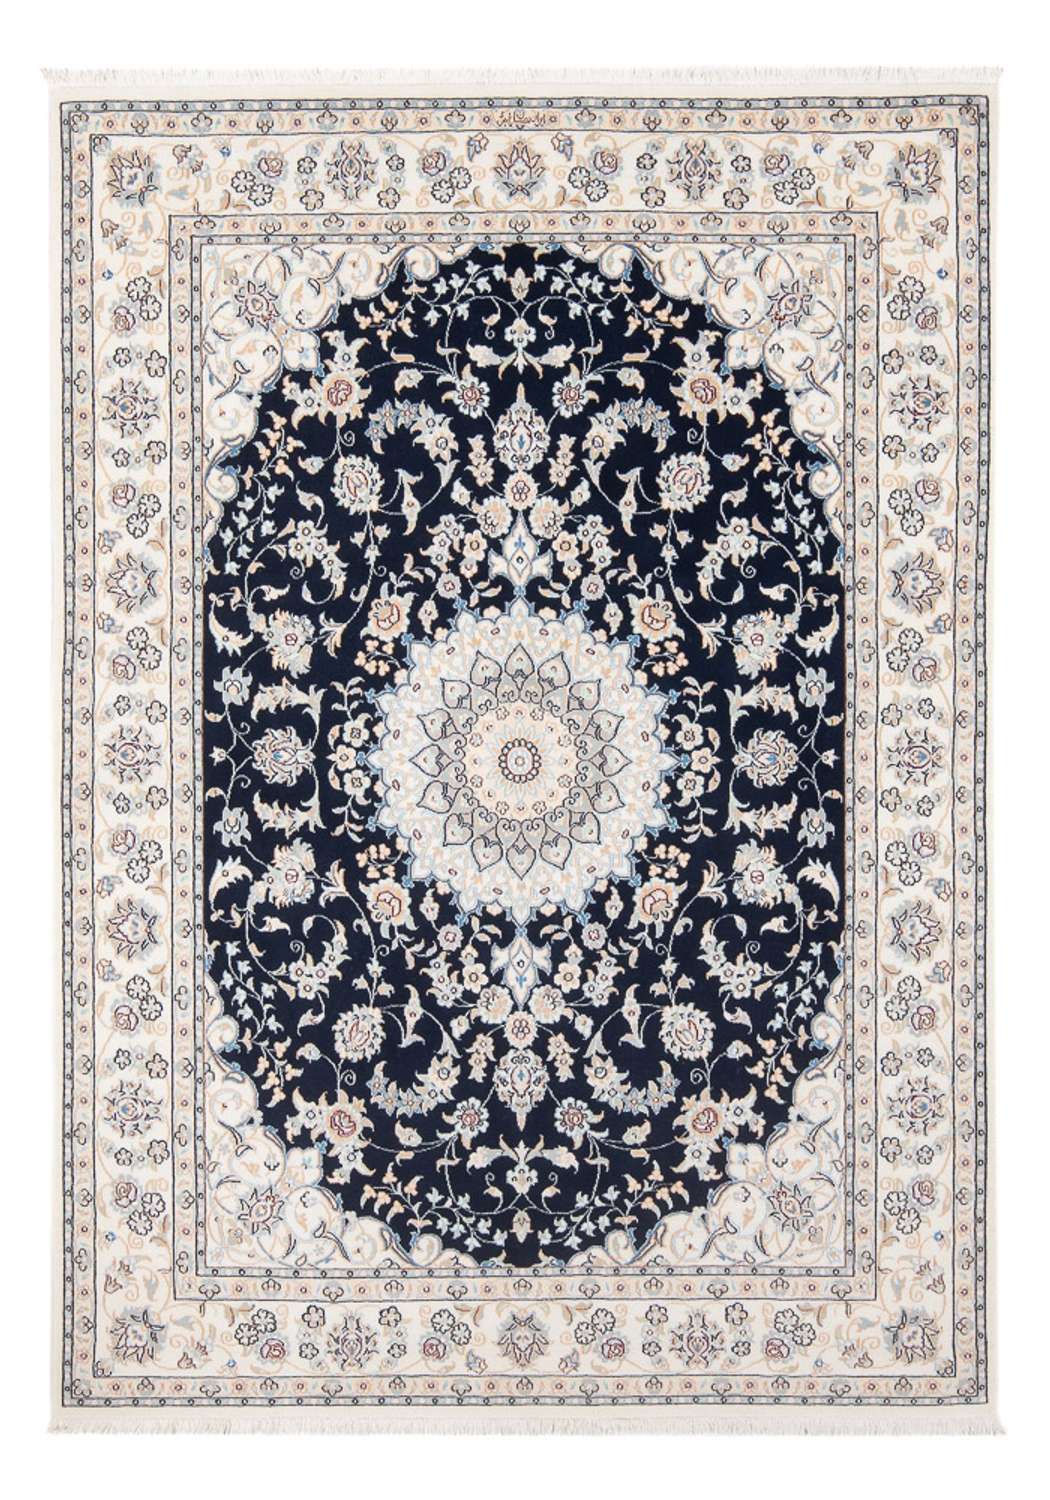 Tapis persan - Nain - Premium - 203 x 149 cm - bleu foncé